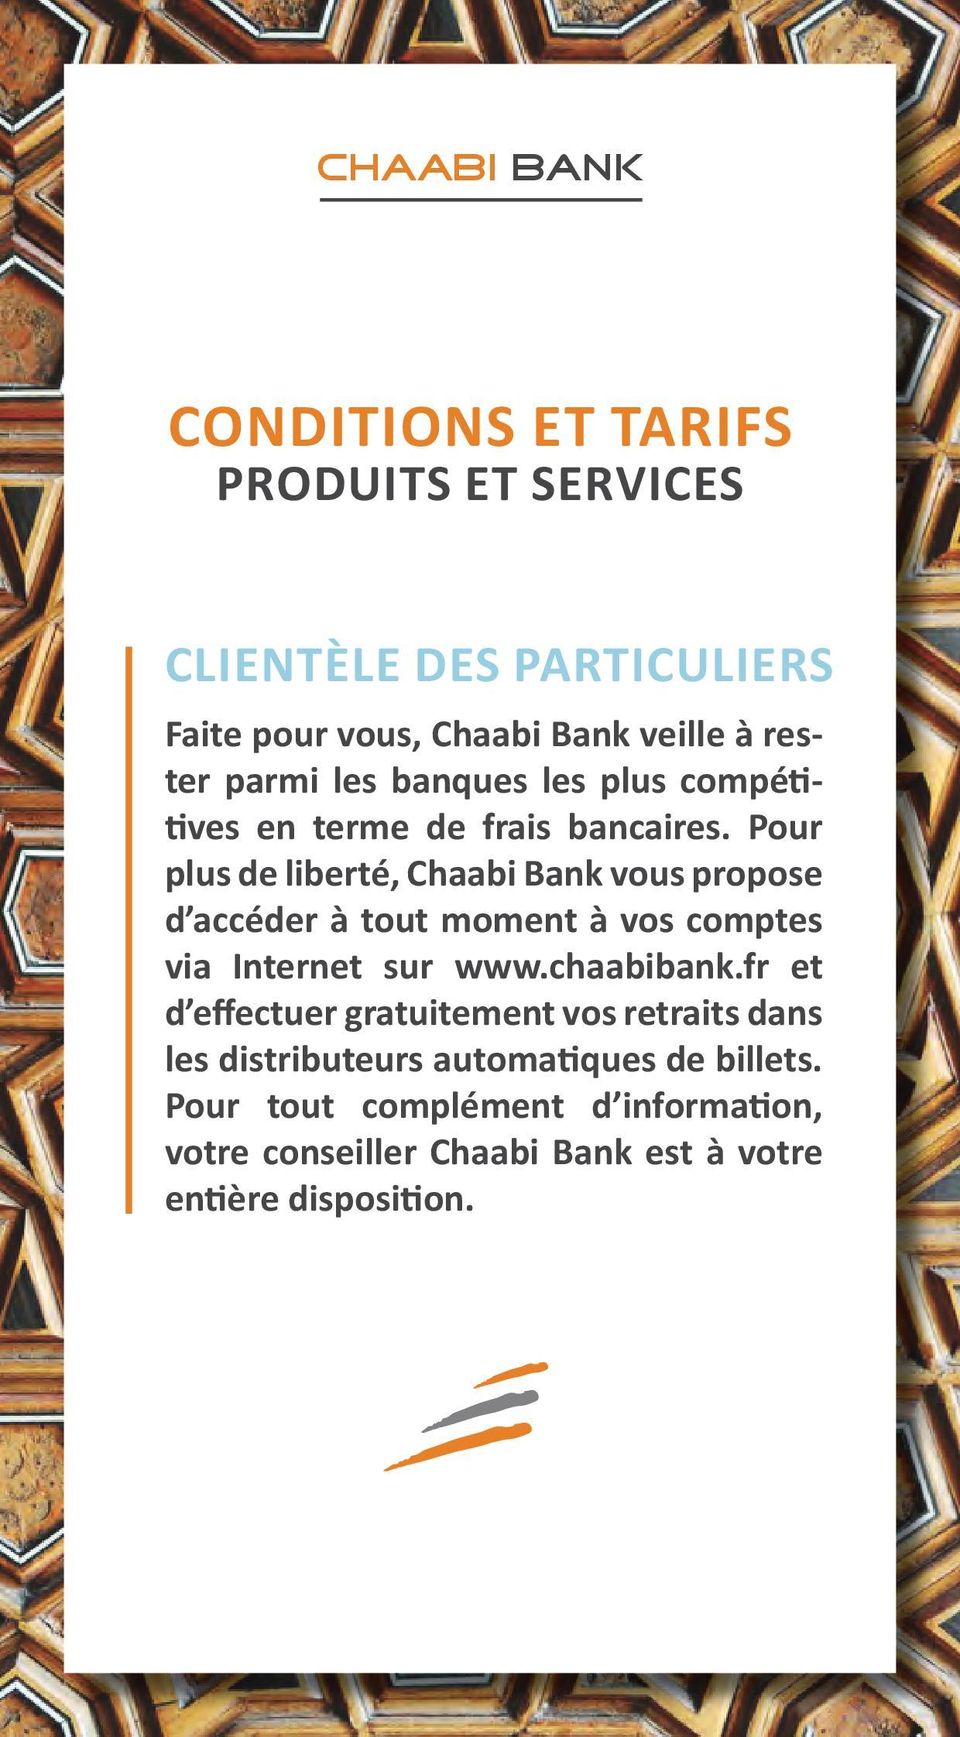 Pour plus de liberté, Chaabi Bank vous propose d accéder à tout moment à vos comptes via Internet sur www.chaabibank.